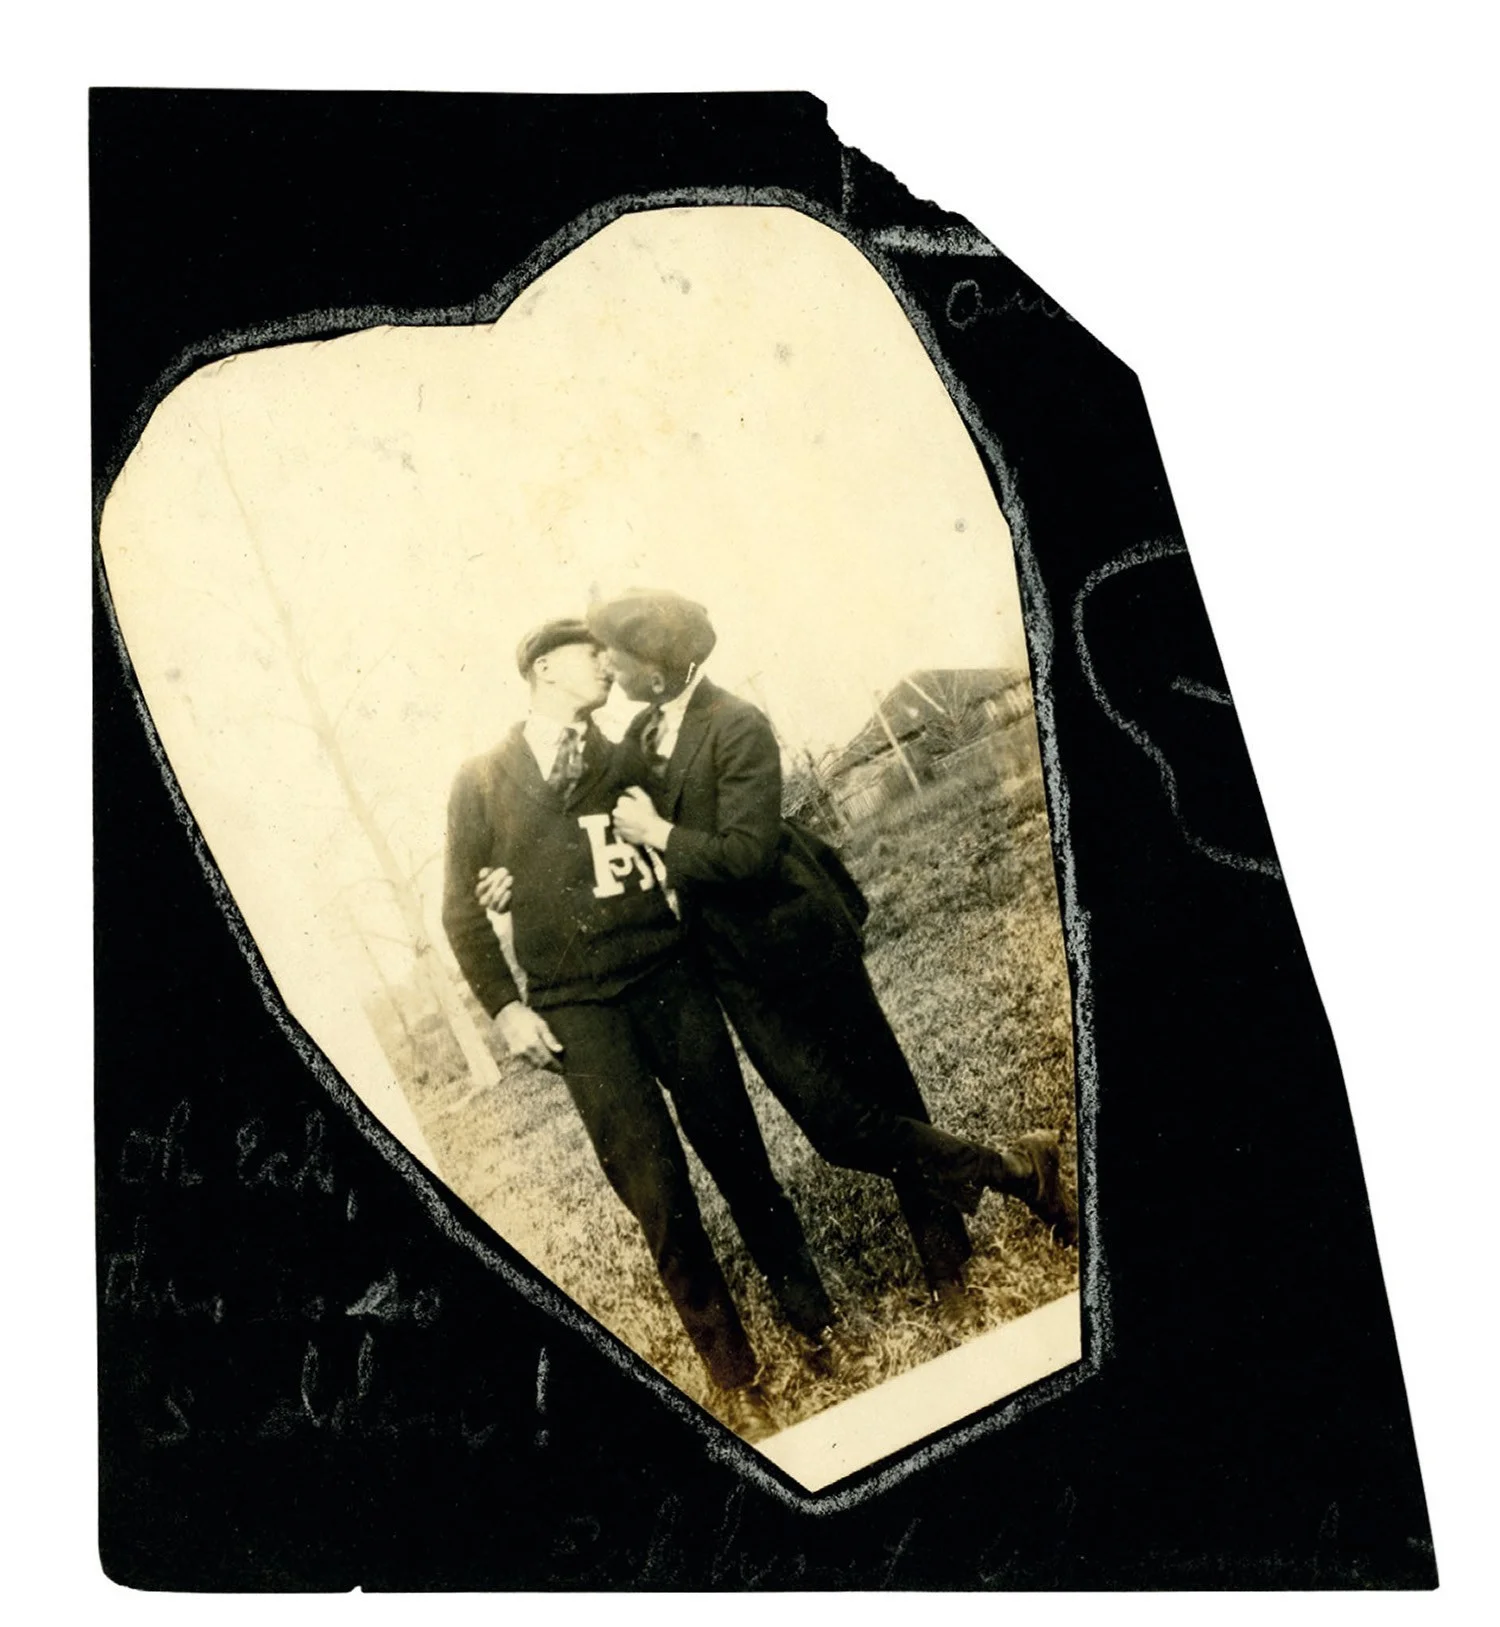 Машина часу: архівні фото про те, як цілувалися закохані 100 років тому - фото 486026